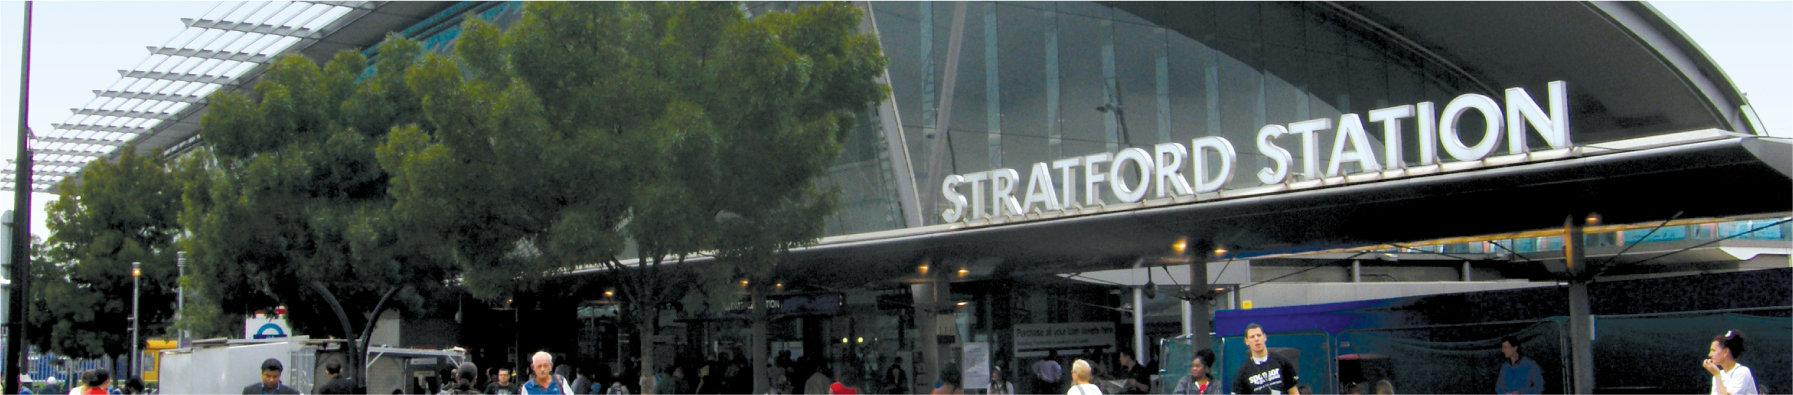 Stratford Station improvements